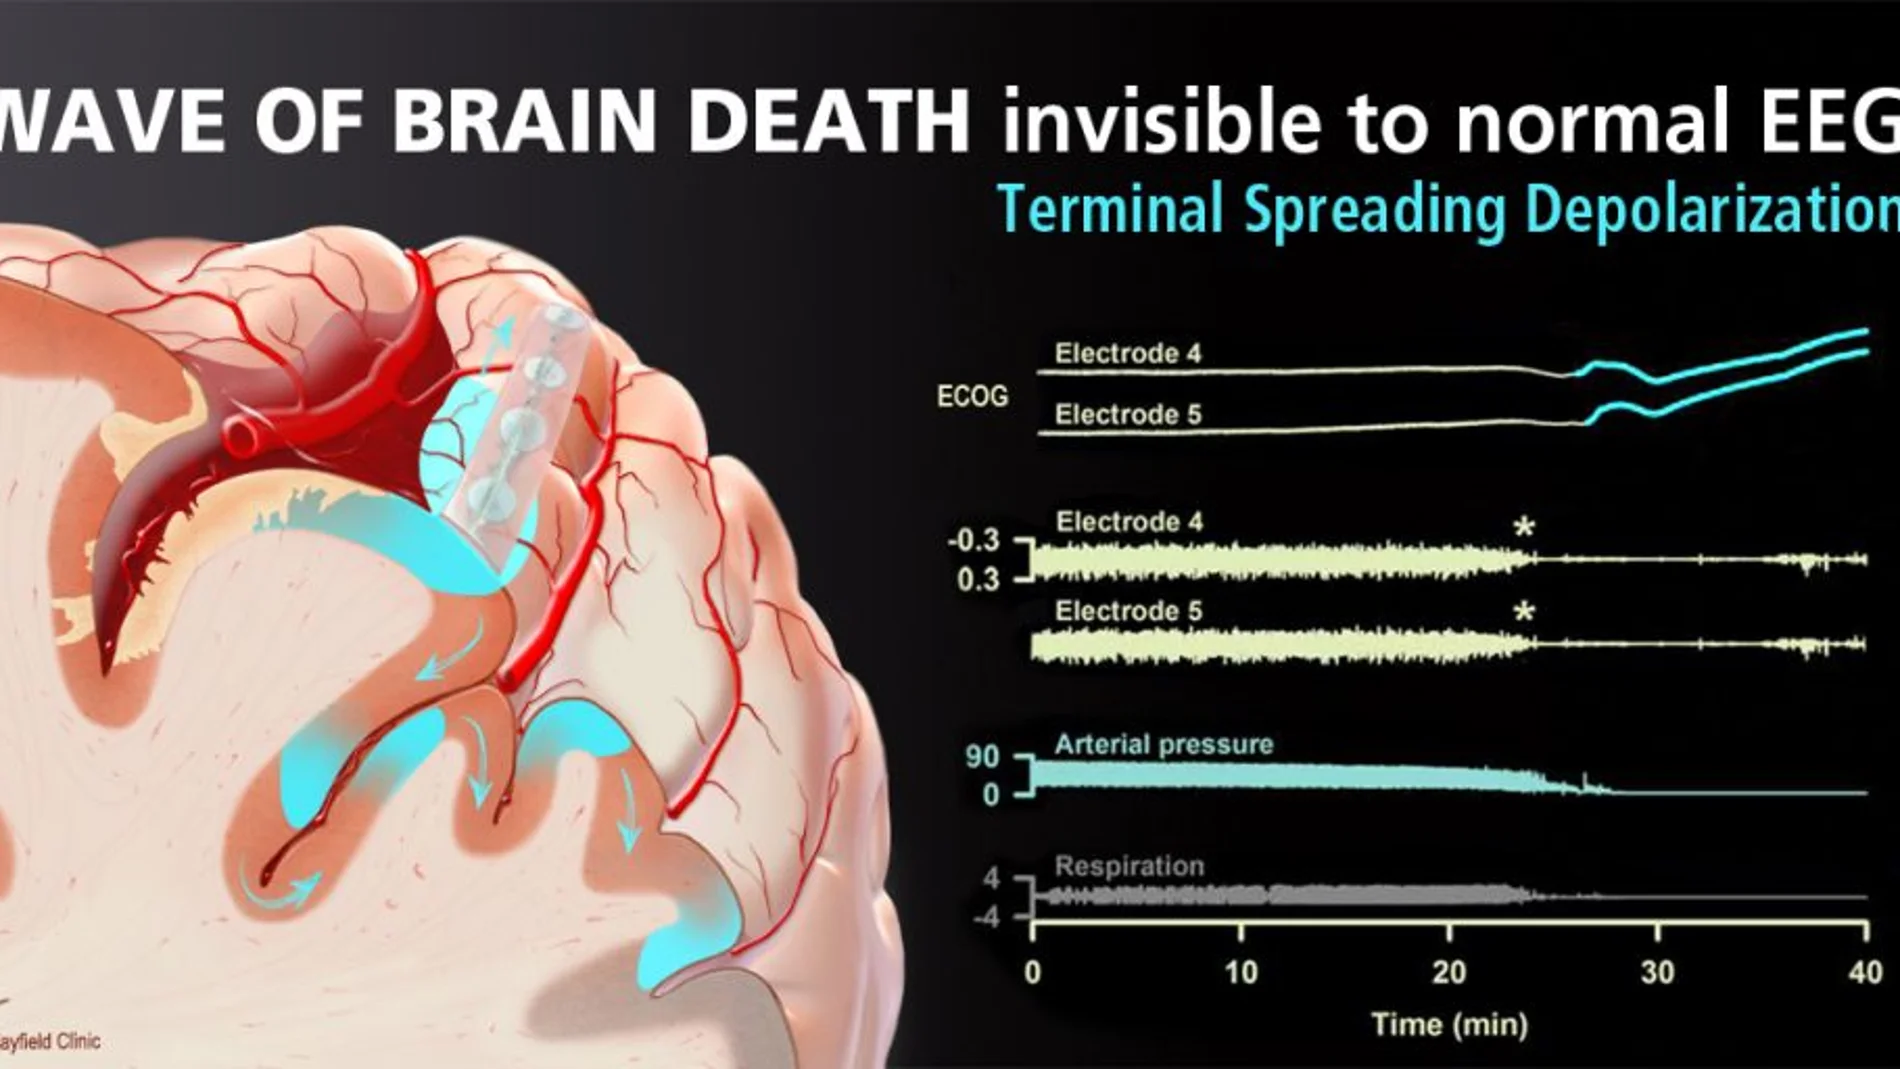 Tsunami cerebral: la despolarización por difusión terminal ocurre varios minutos después de que la ecografía muestra silencio eléctrico (asteriscos) y el paro circulatorio y la respiración han terminado